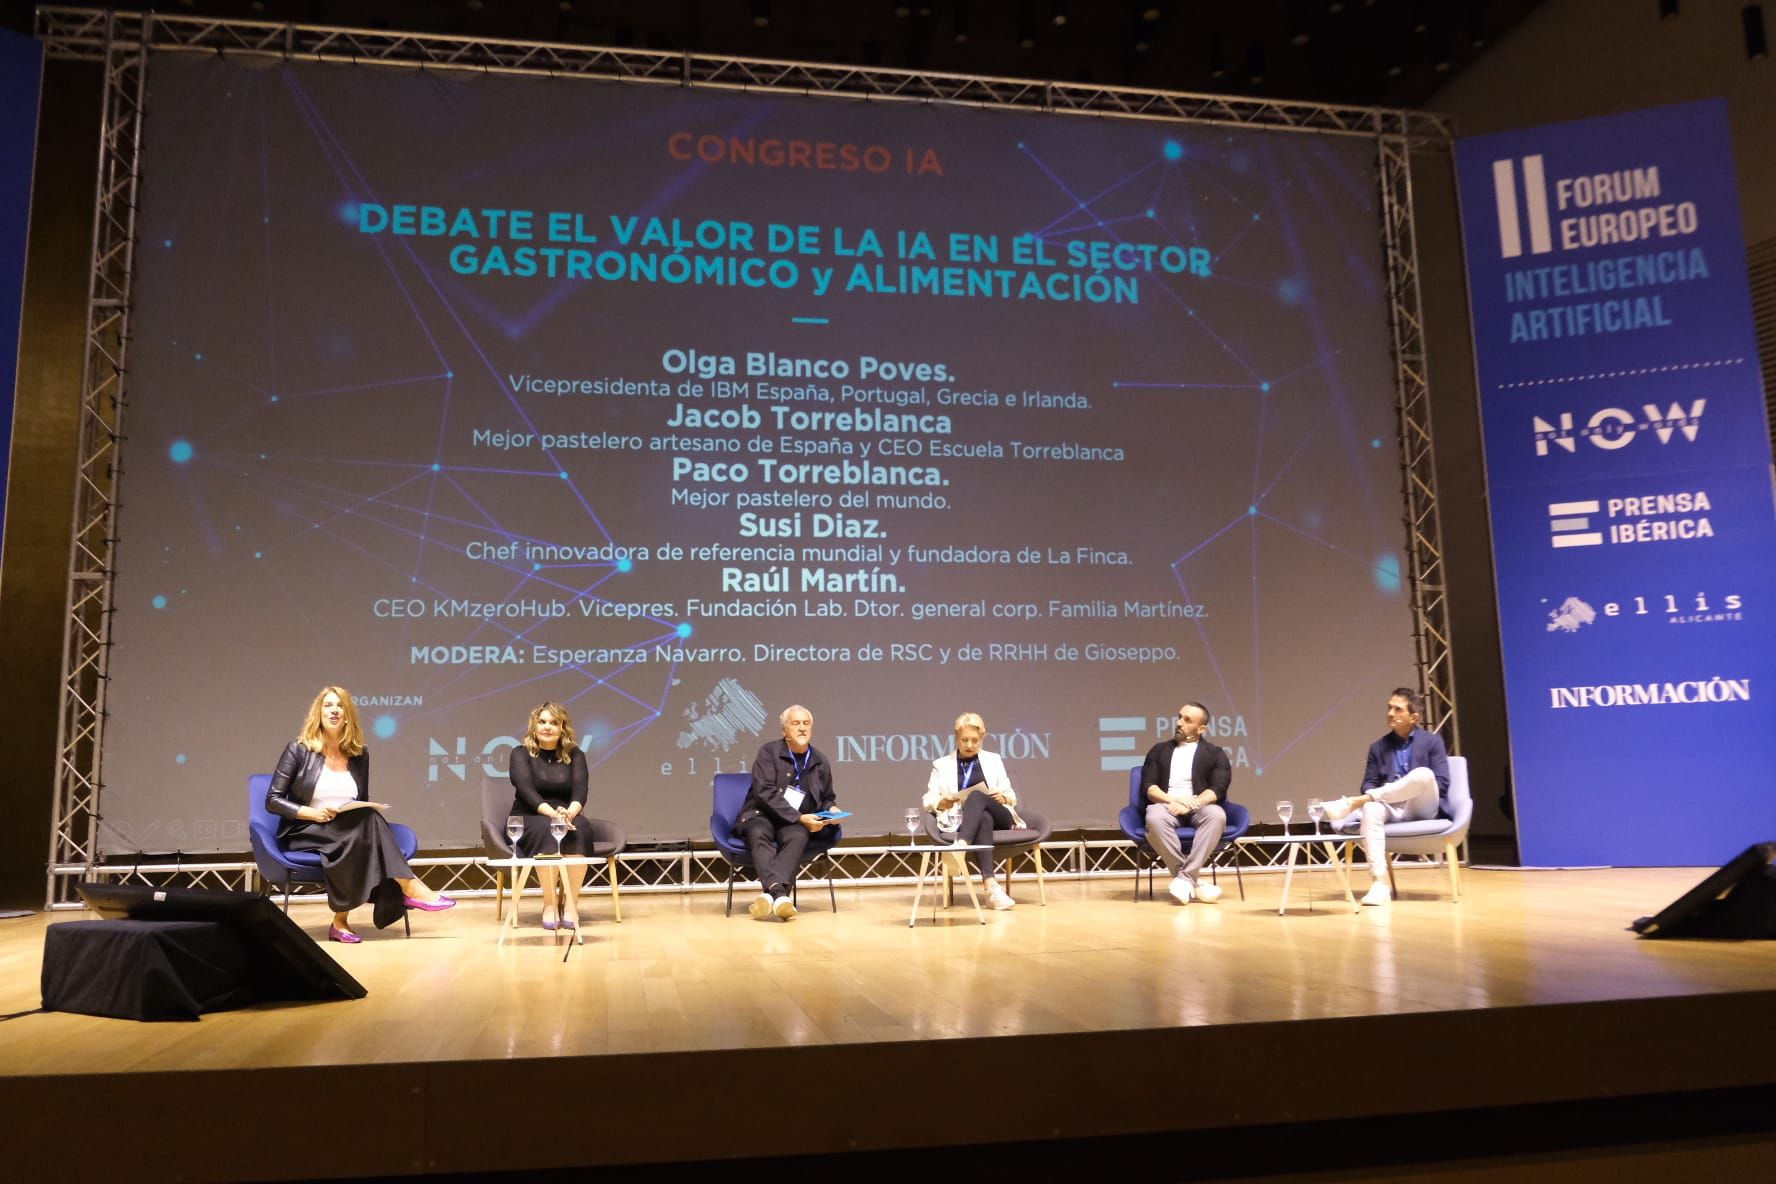 Galería de Imágenes del II Fórum de europeo de Inteligencia Artificial de Alicante